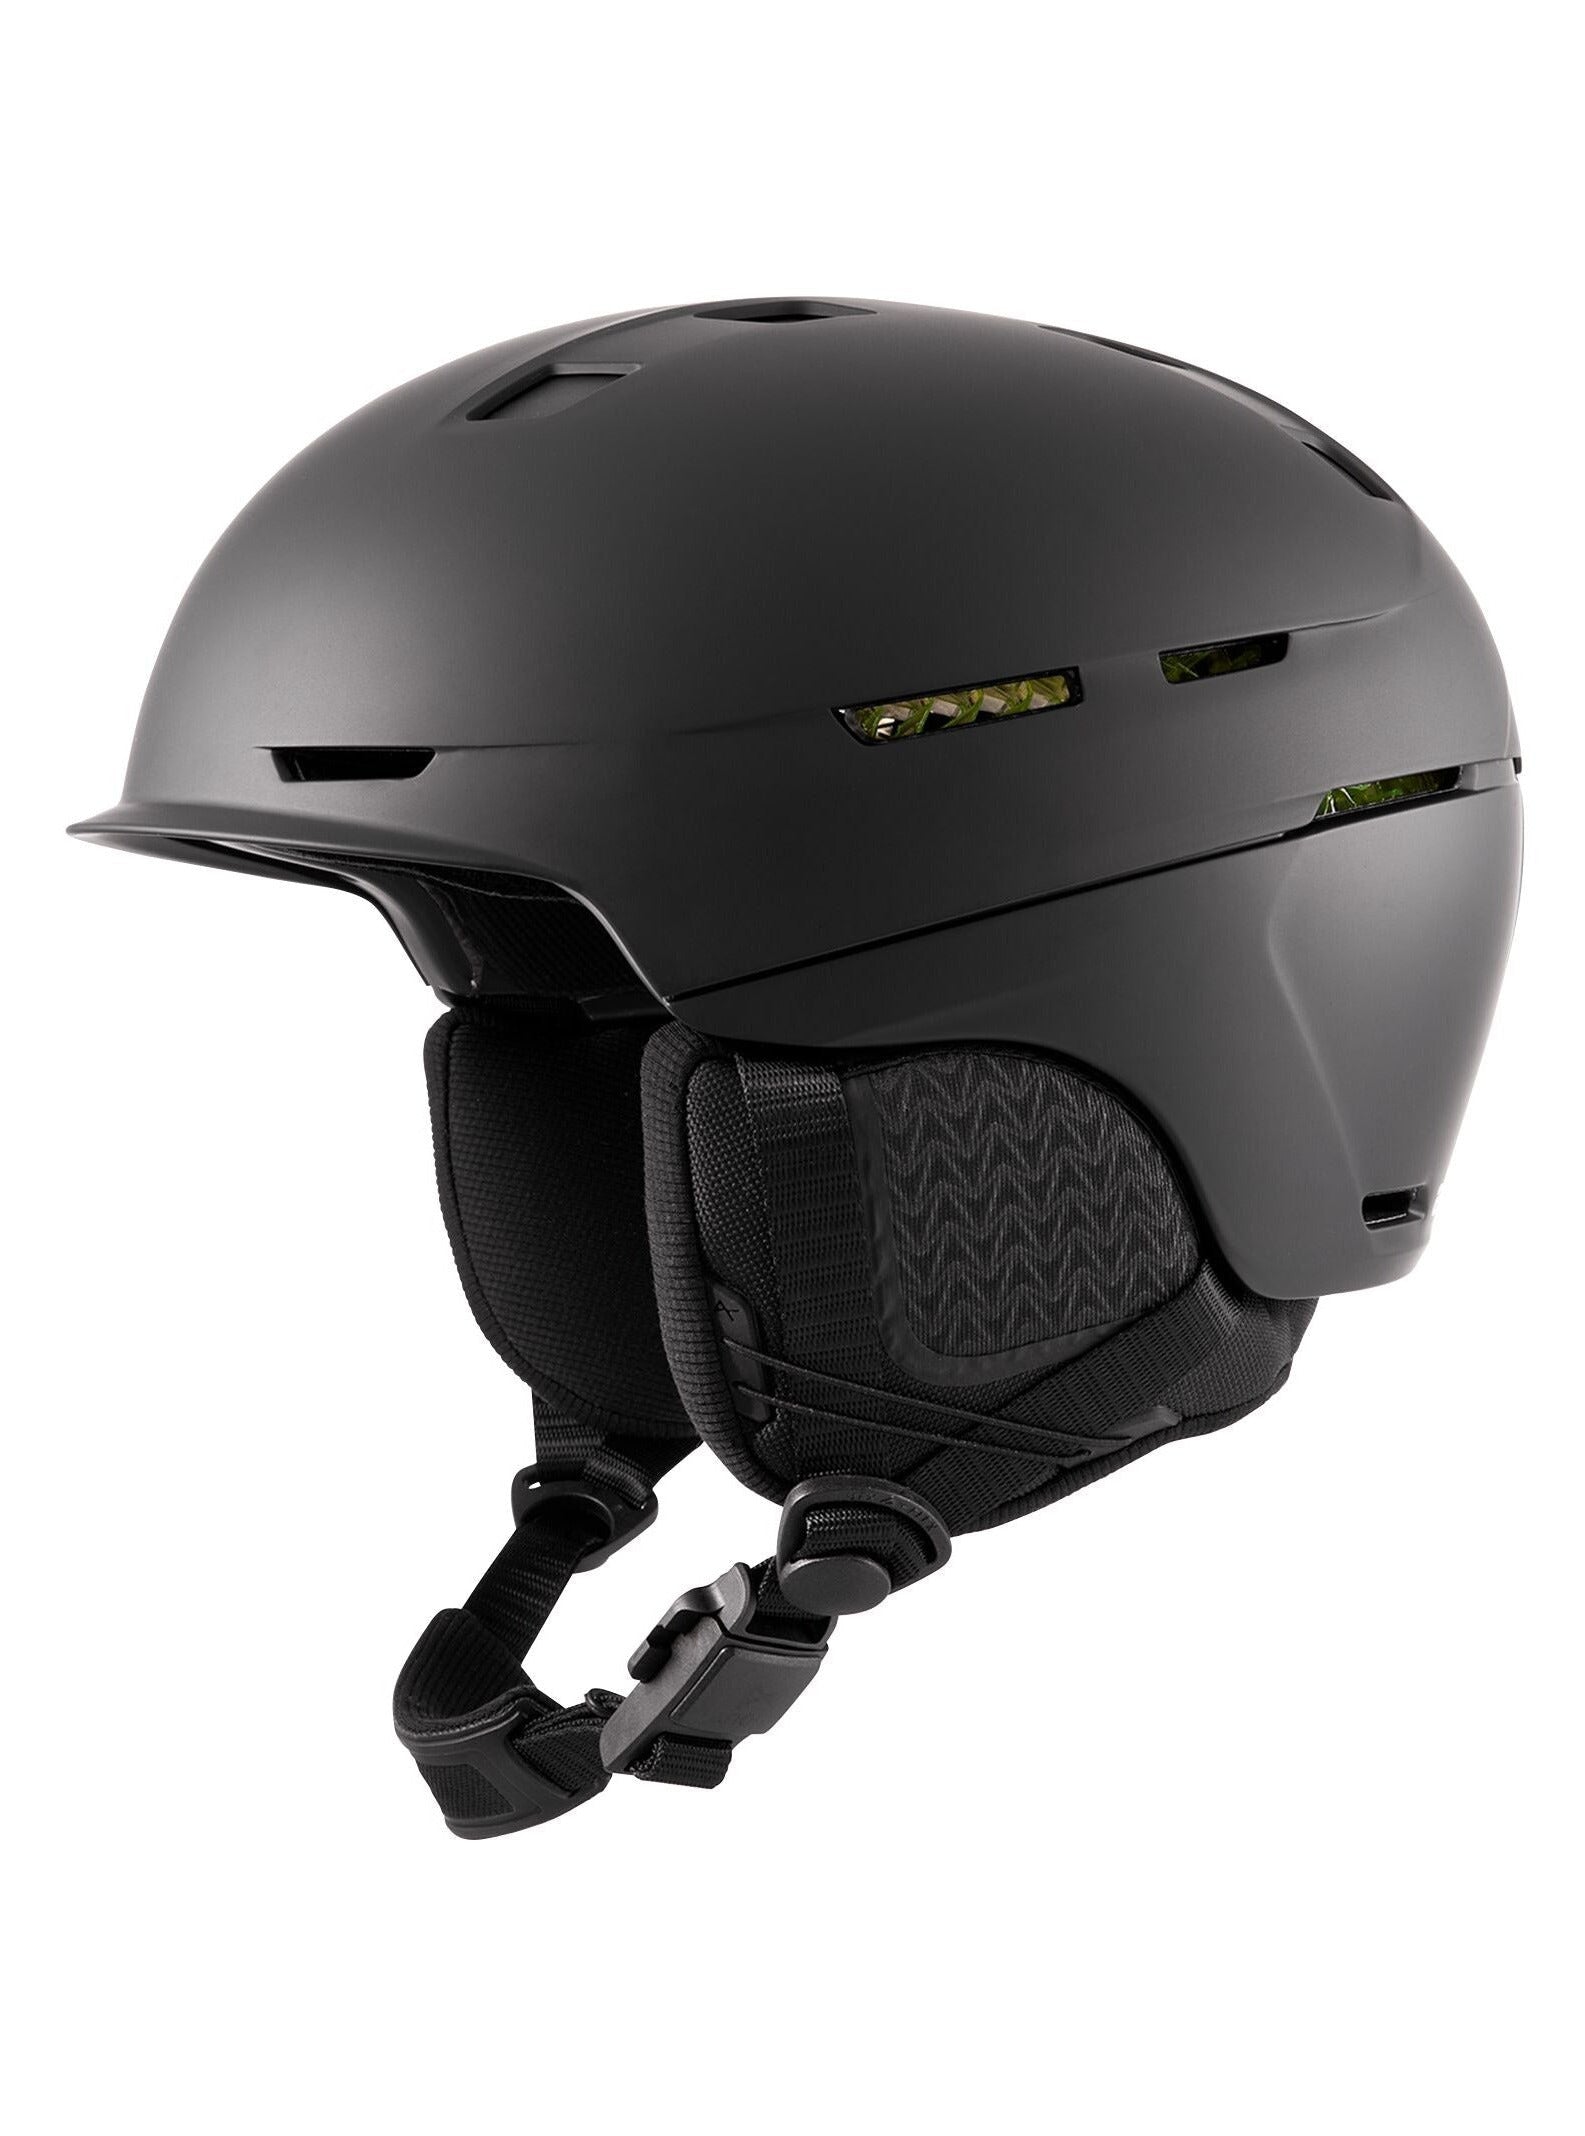 Anon Merak WaveCel Helmet - Winter 2022/2023